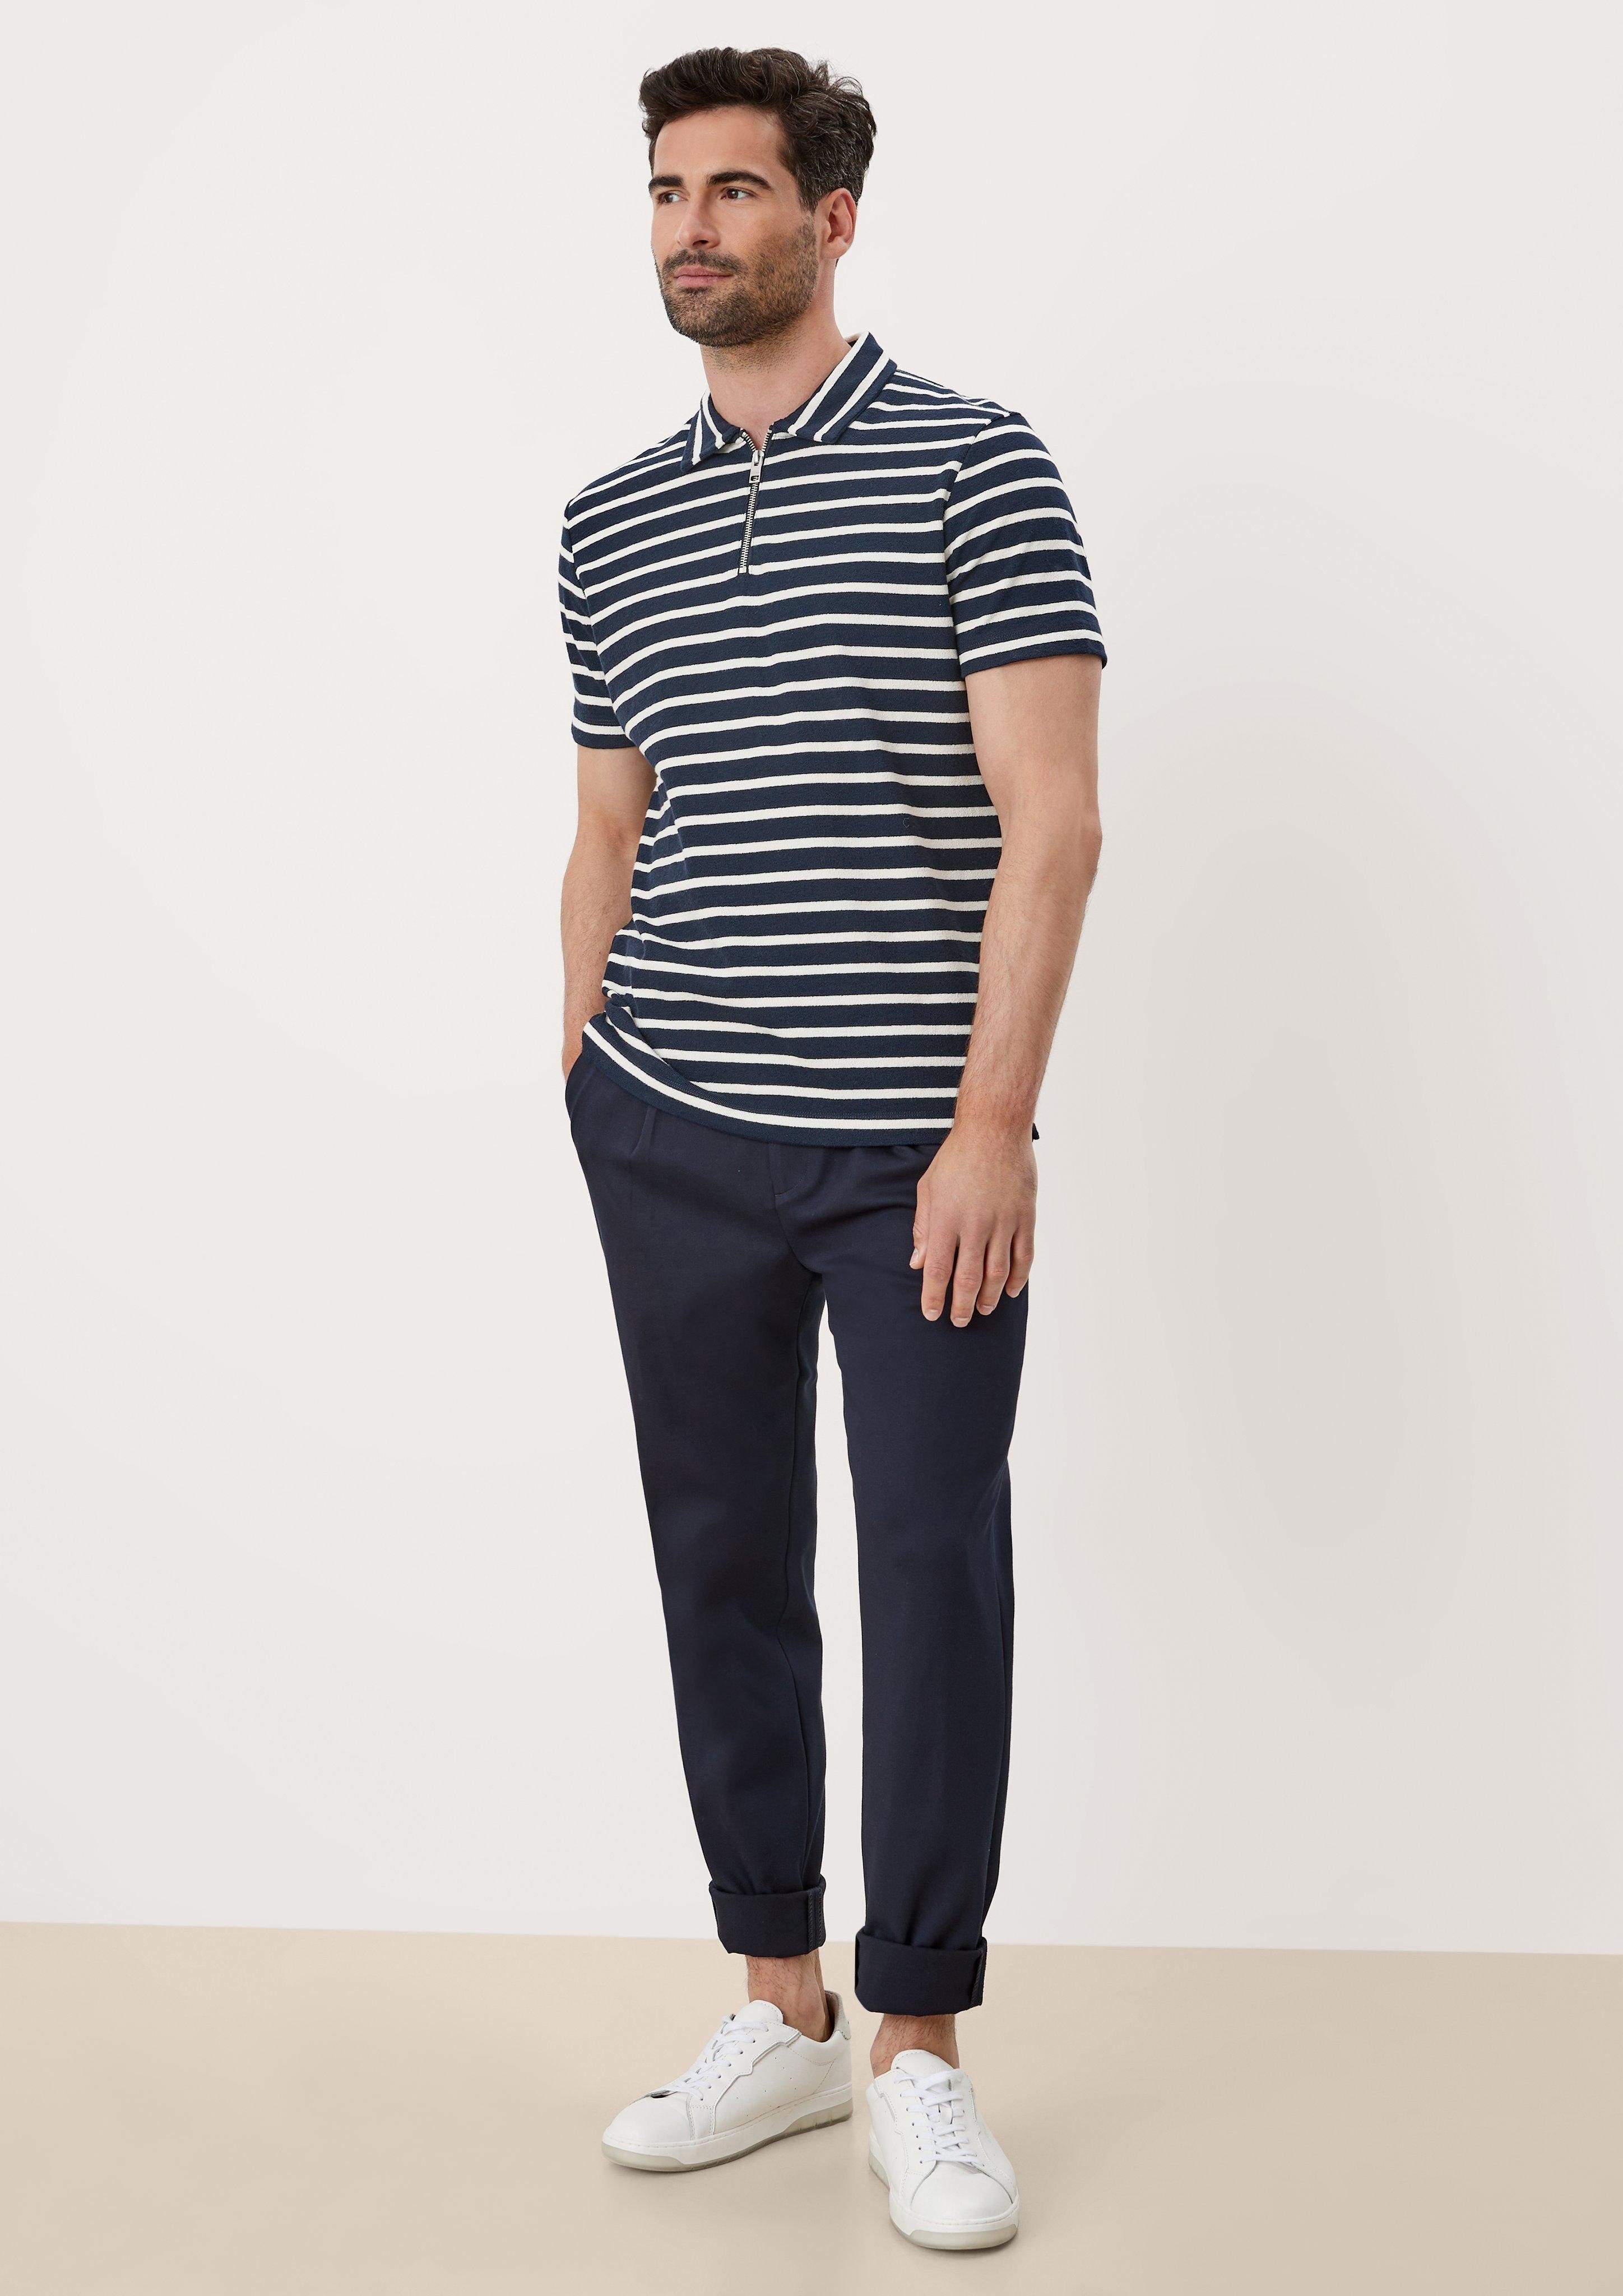 s.Oliver stripes Kurzarmshirt Poloshirt navy im Streifendesign